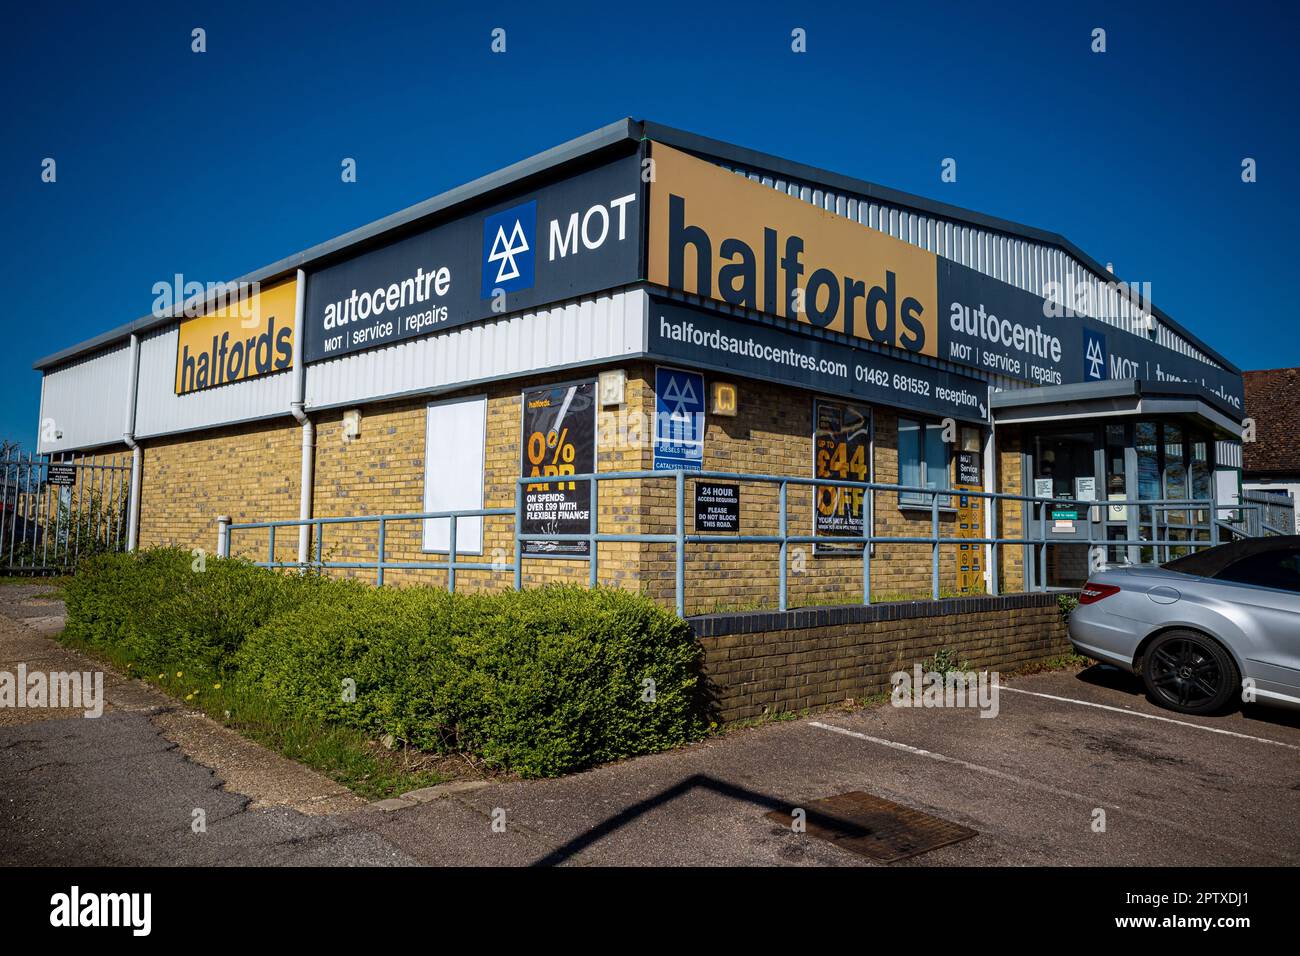 Halfords Autocenter - Halfords Autocenter Letchworth Garden City Reino Unido. Centro de piezas y servicio. Halfords Autocenter es un centro de servicio y reparación de automóviles. Foto de stock